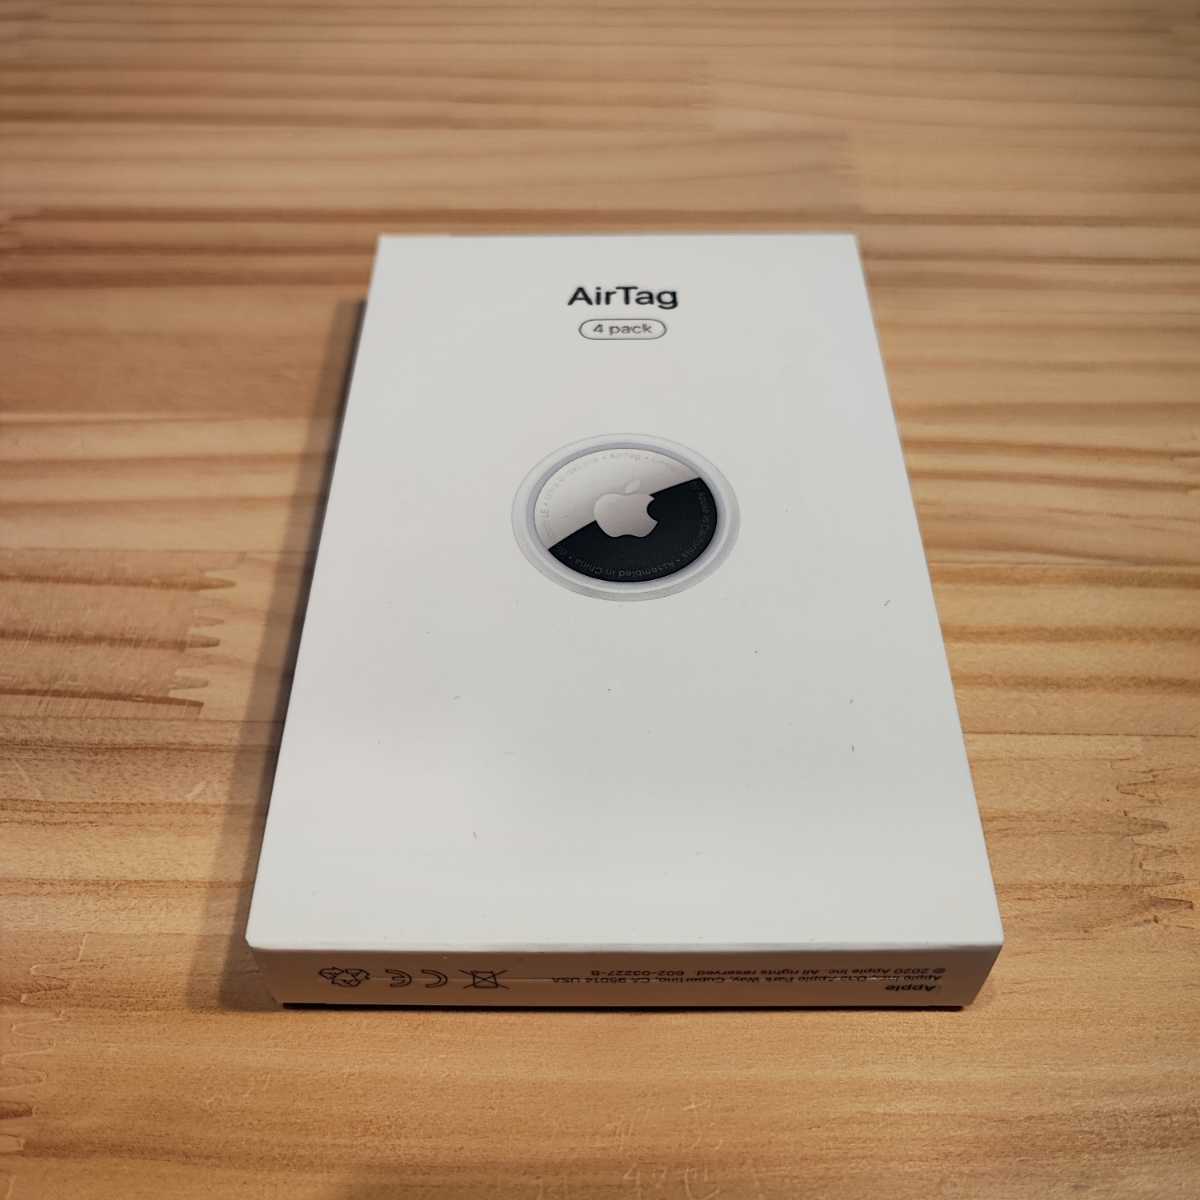 売り尽くしセール Apple AirTag 4個入り 新品未開封品 4pack MX542ZP/A エアータグ